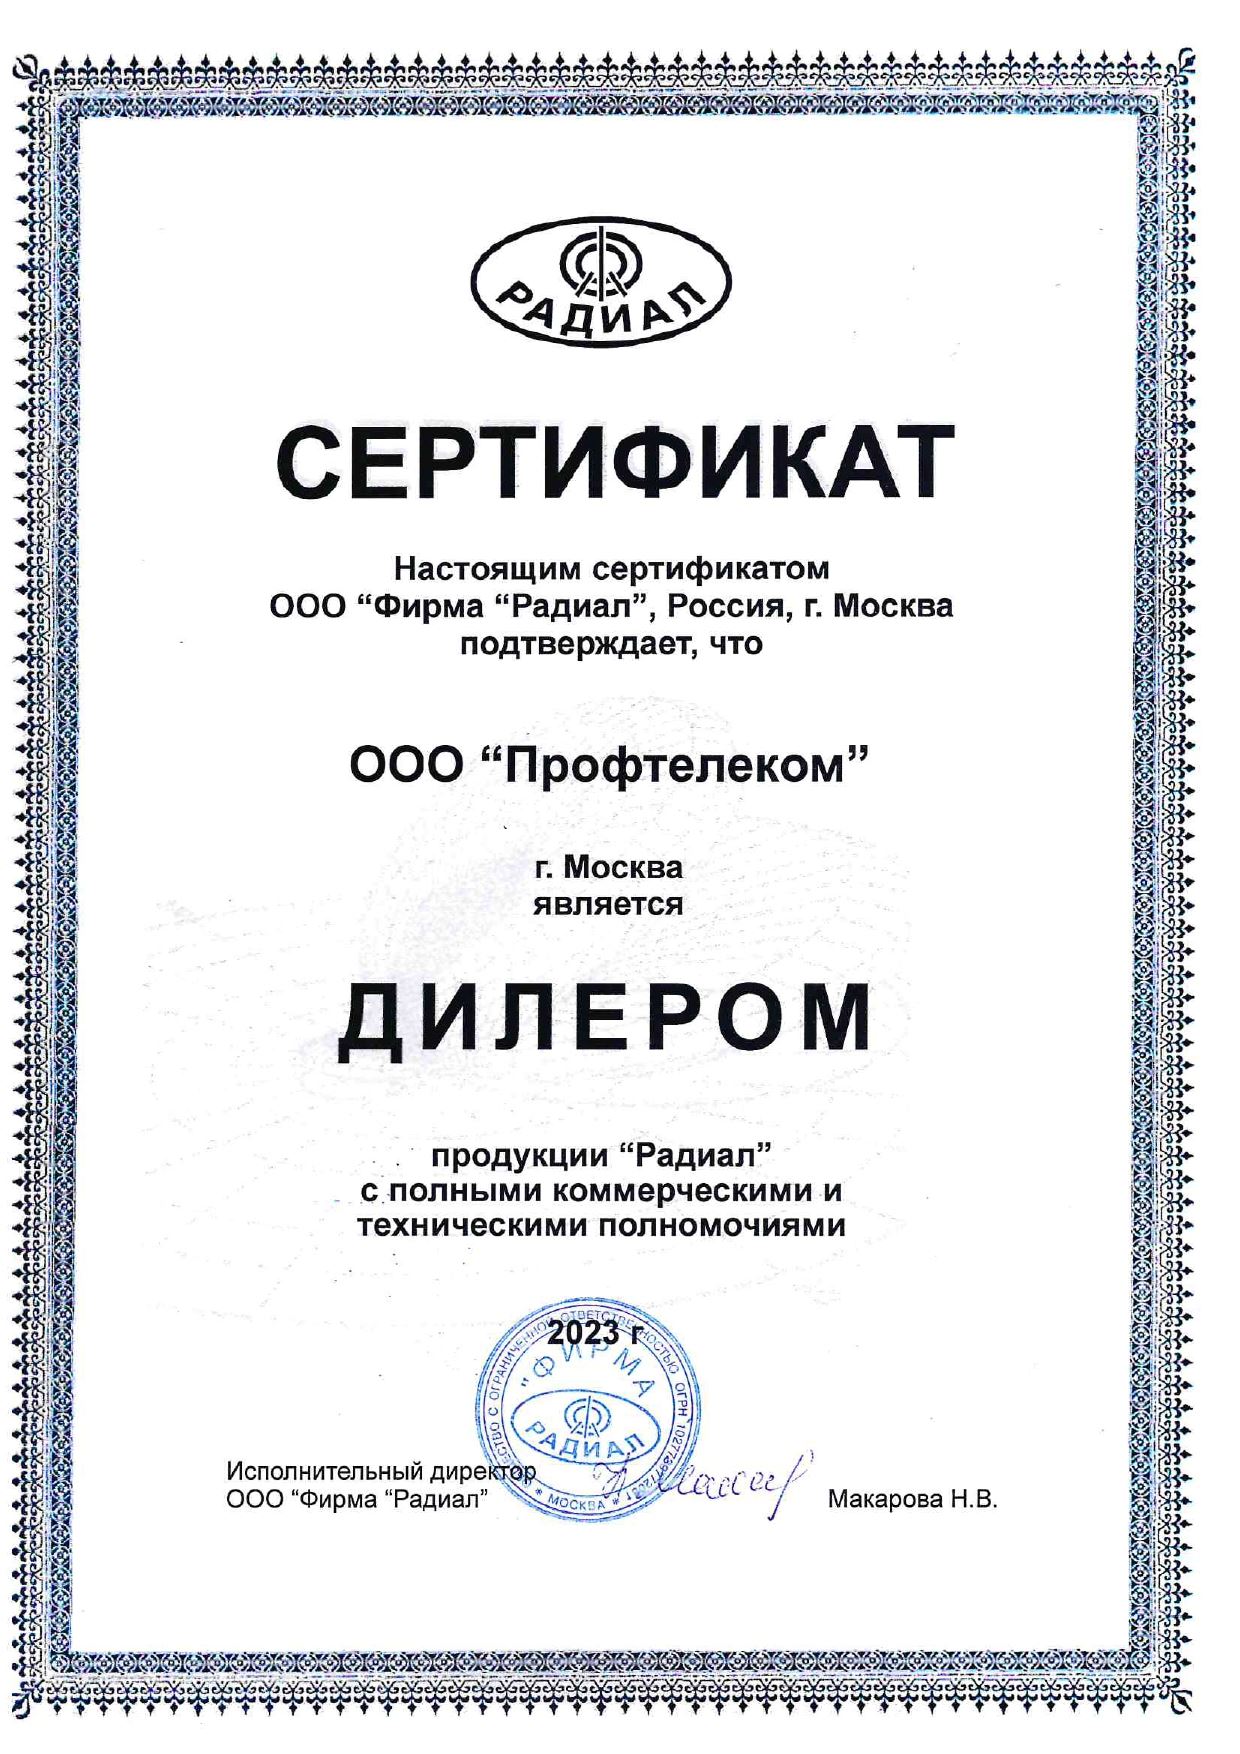 Сертификат дилера ПТК на РАДИАЛ 2023 год